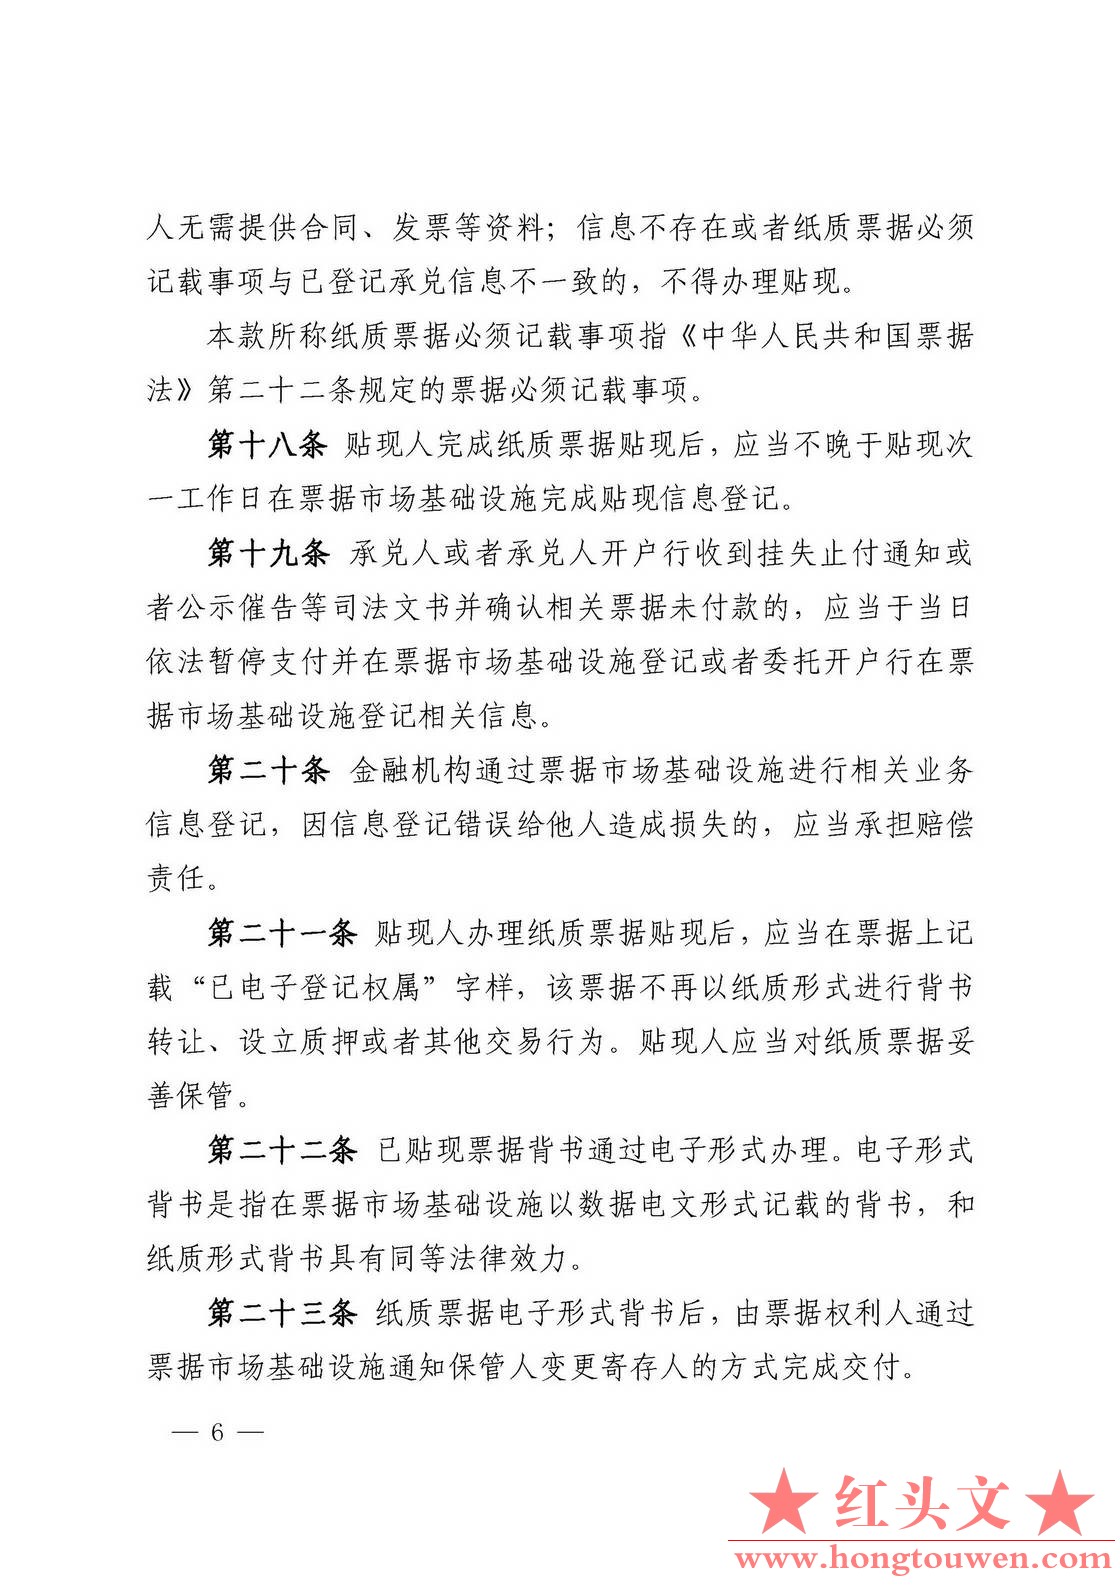 中国人民银行公告[2016]9号-票据交易管理办法_页面_06.jpg